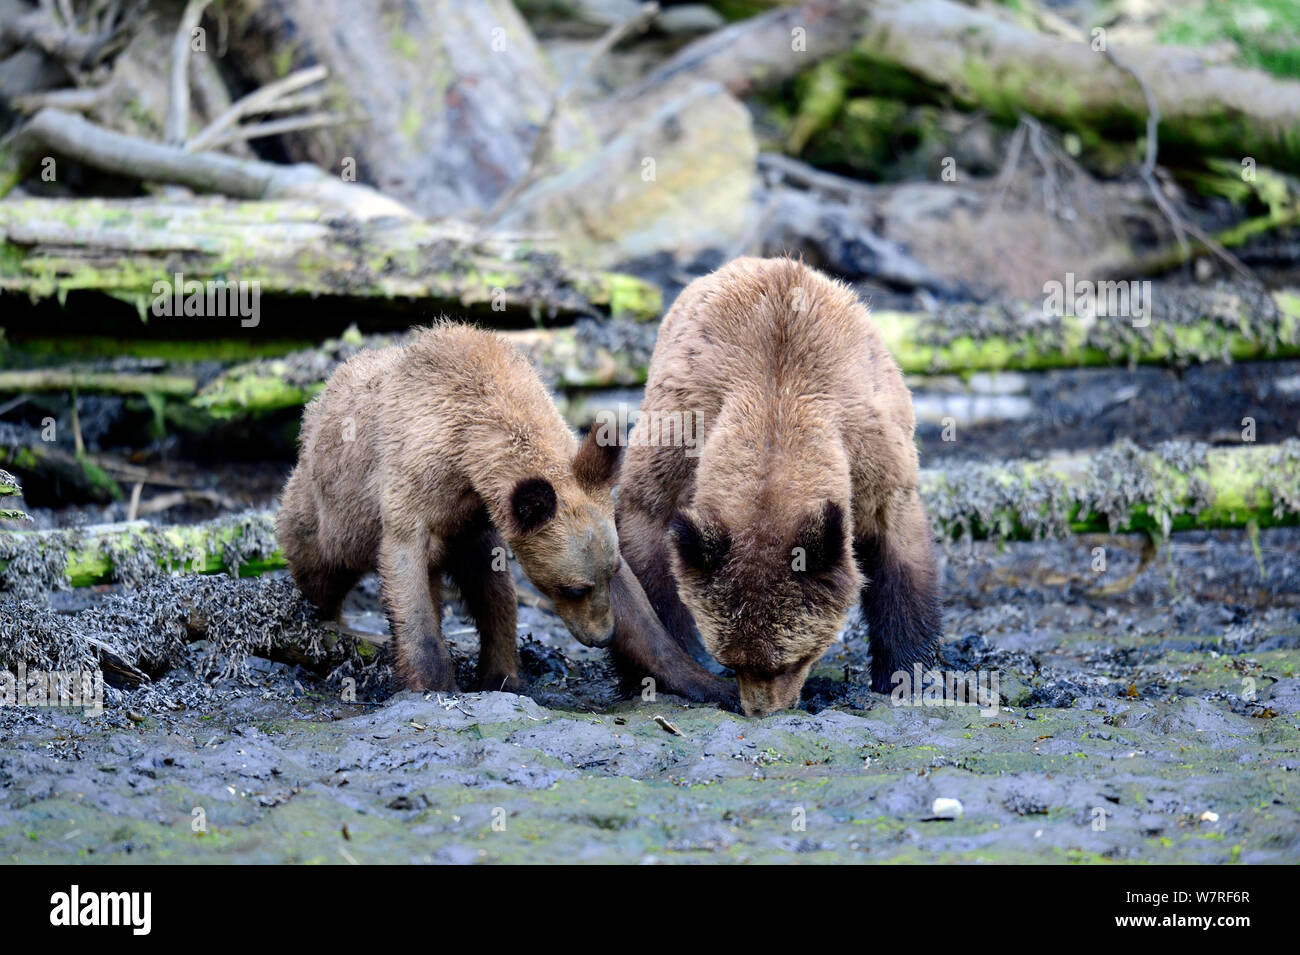 Hembra de oso grizzly (Ursus arctos horribilis) y su cachorro forrajeando para las almejas con marea baja en los bancos de la entrada, Khutzeymateen Grizzly Bear Sanctuary, British Columbia, Canadá, Junio. Foto de stock